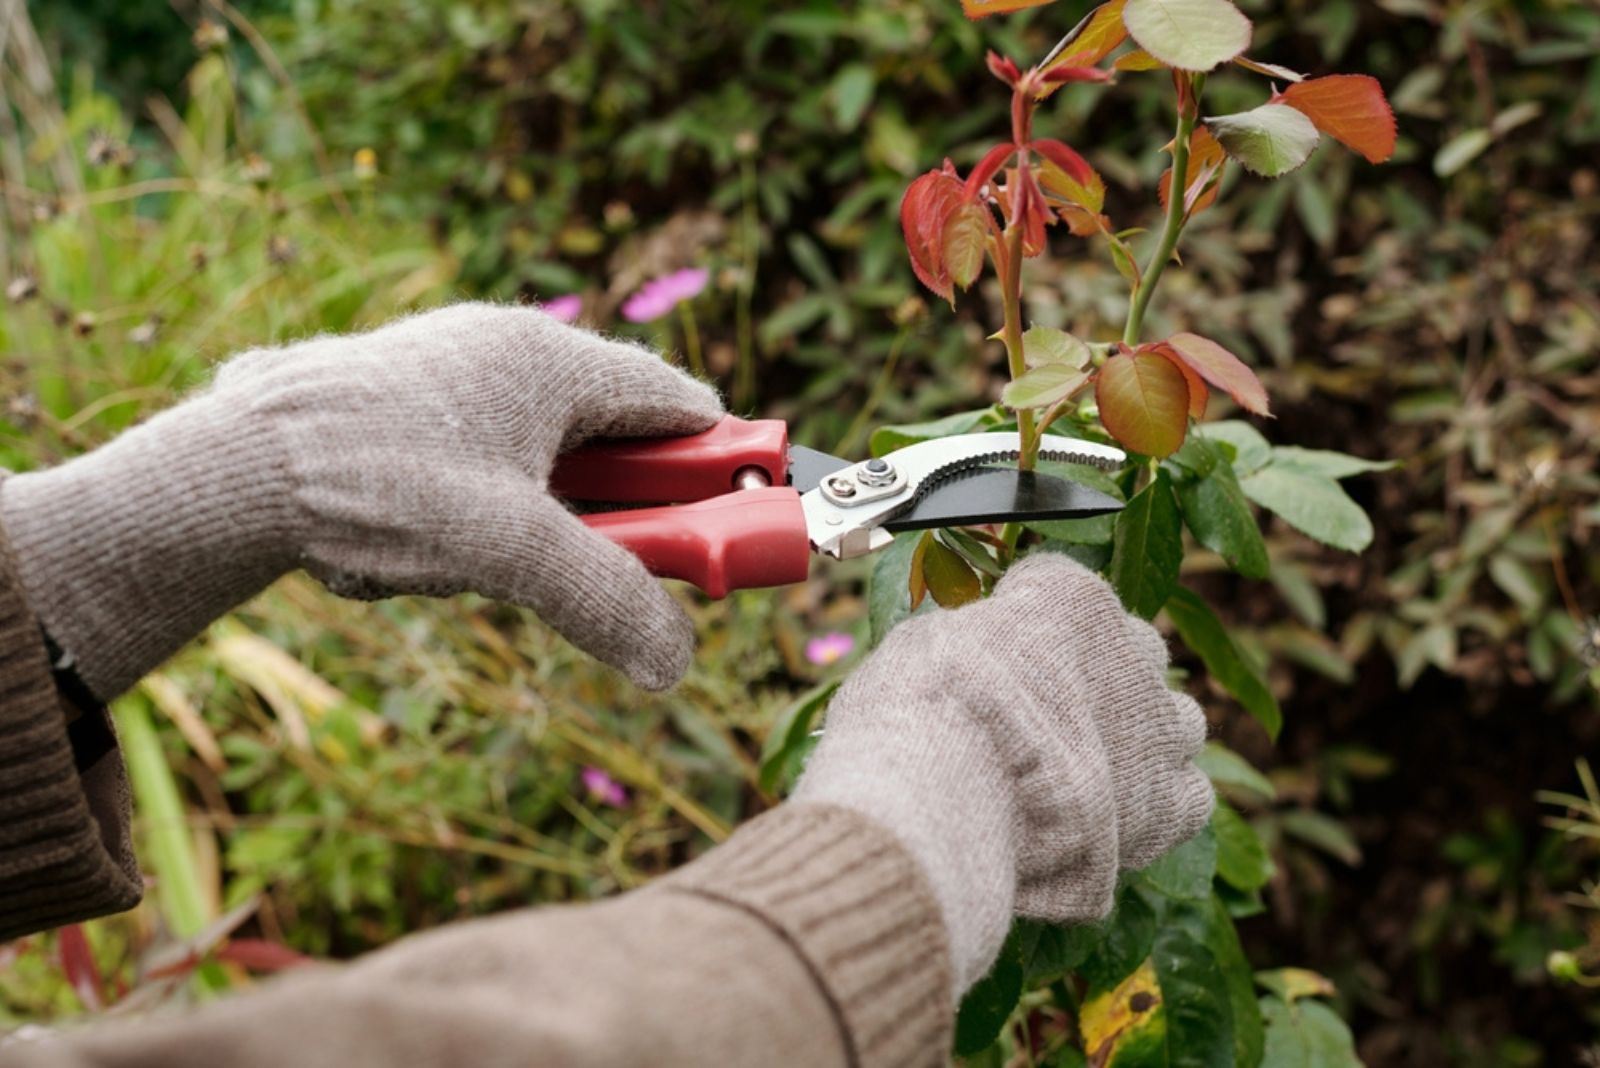  hands of gardener with scissors pruning top of rose